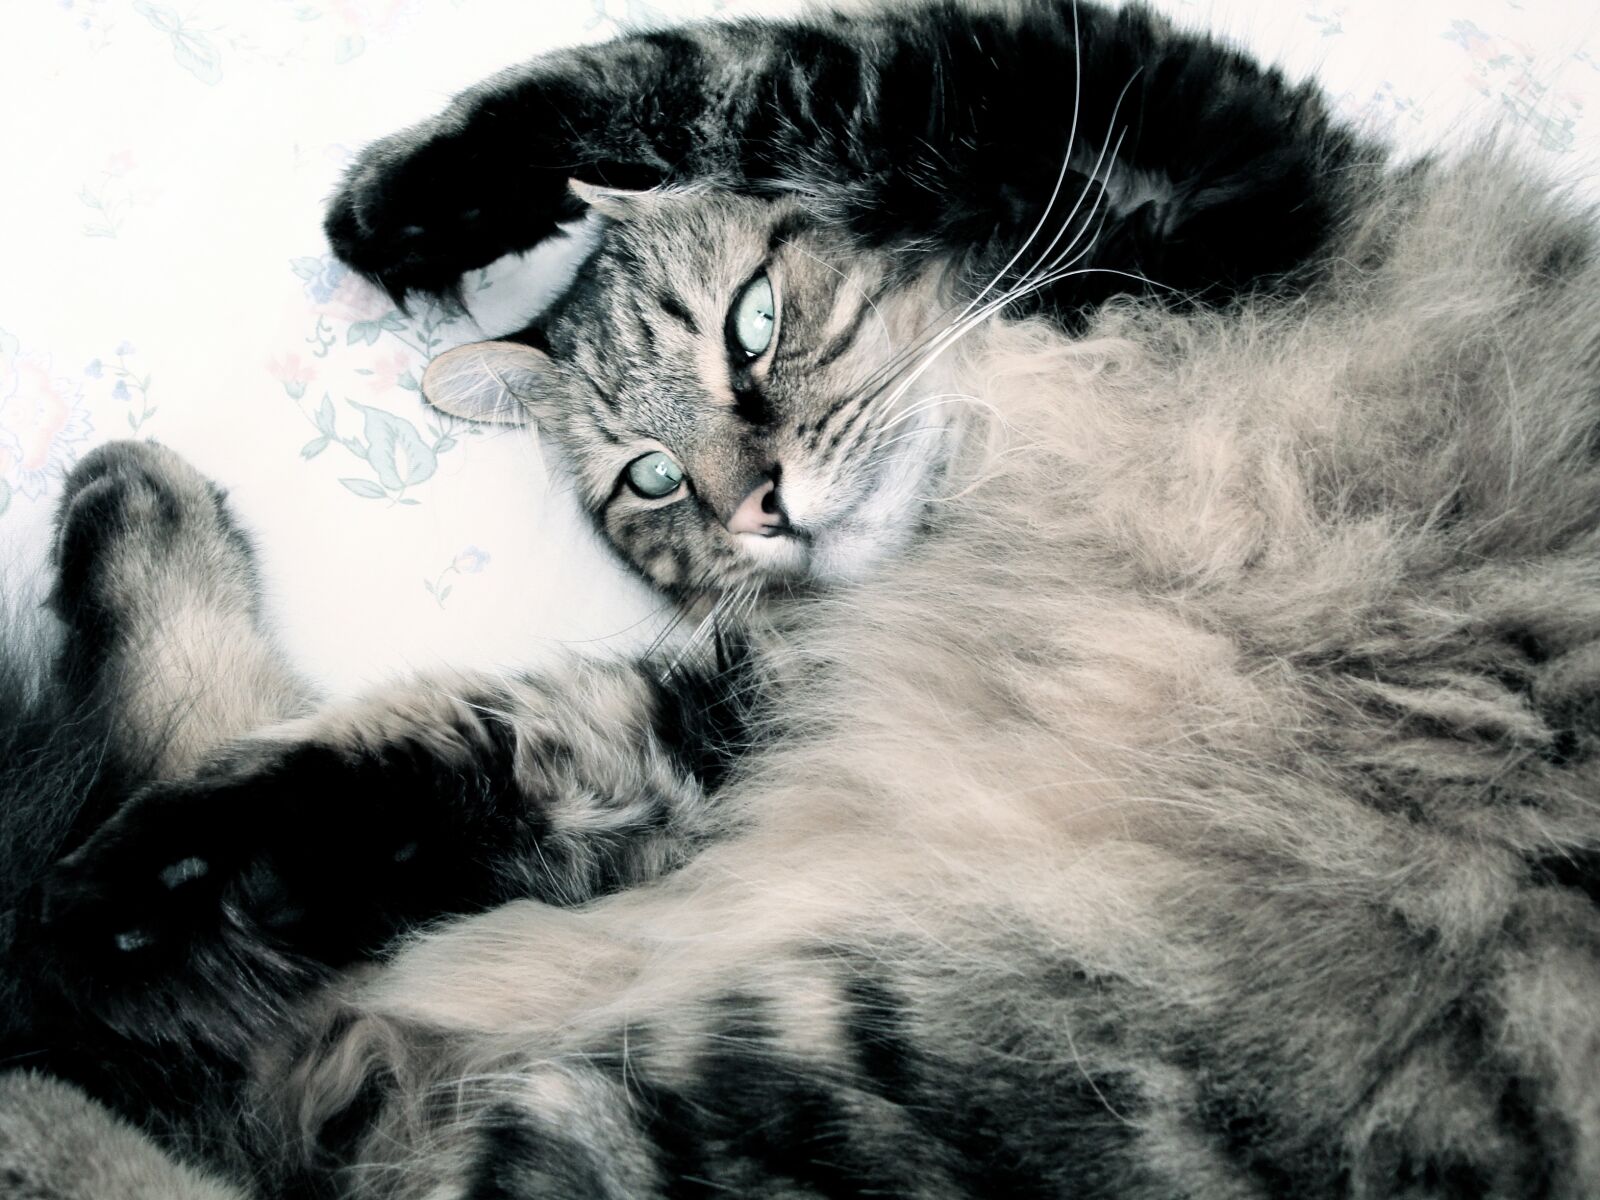 Sony Cyber-shot DSC-W150 sample photo. Cat, feline, tabby cat photography